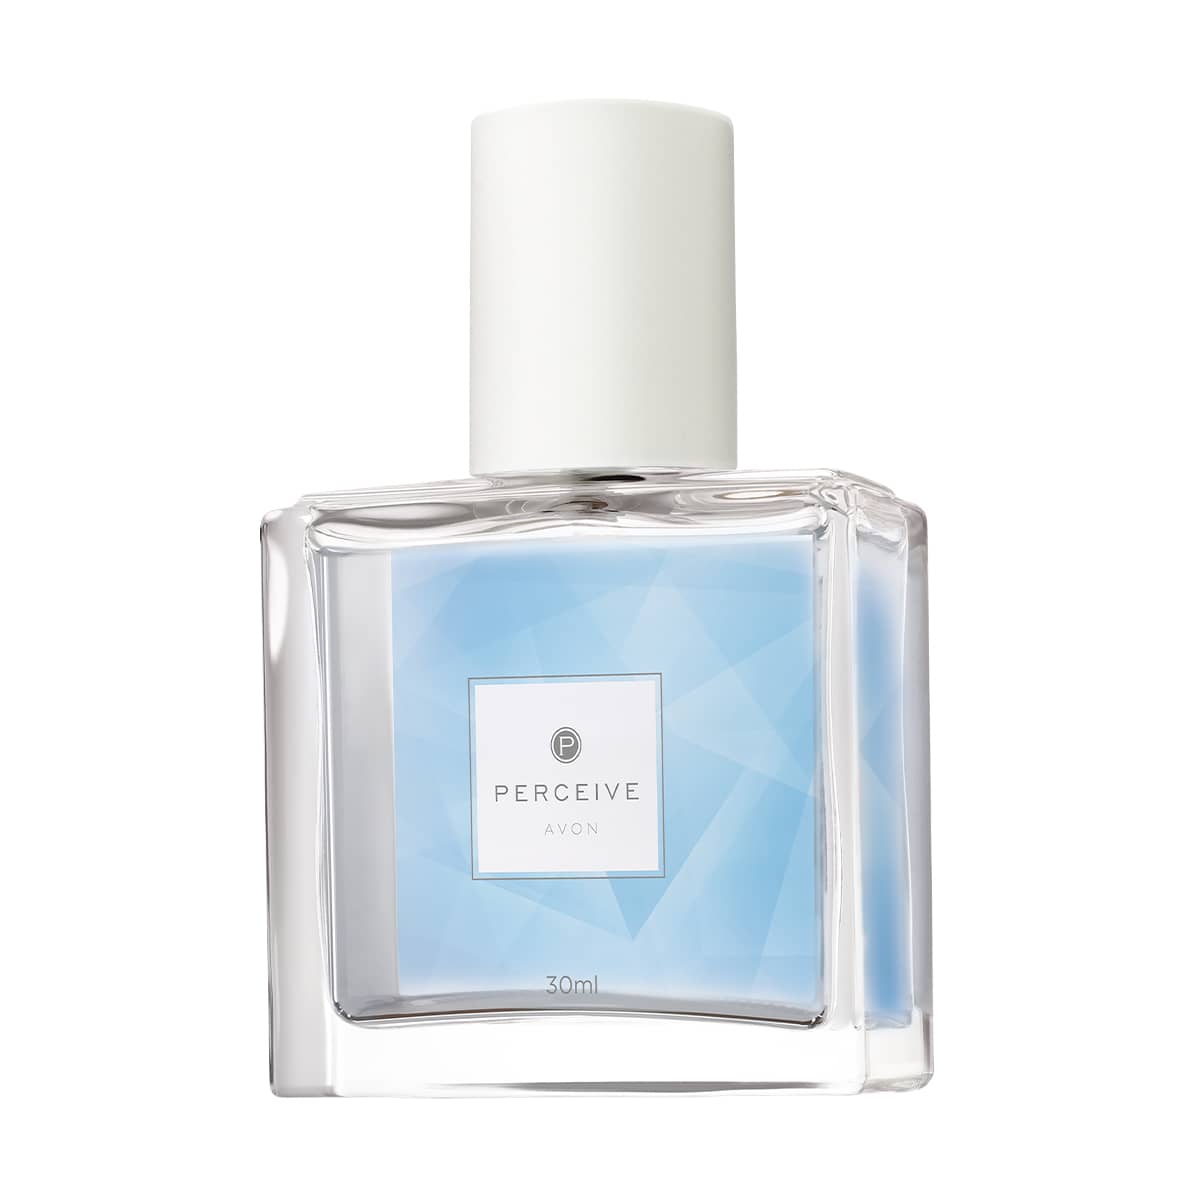 Avon Perceive for Her Eau de Parfum Travel Size - 30ml